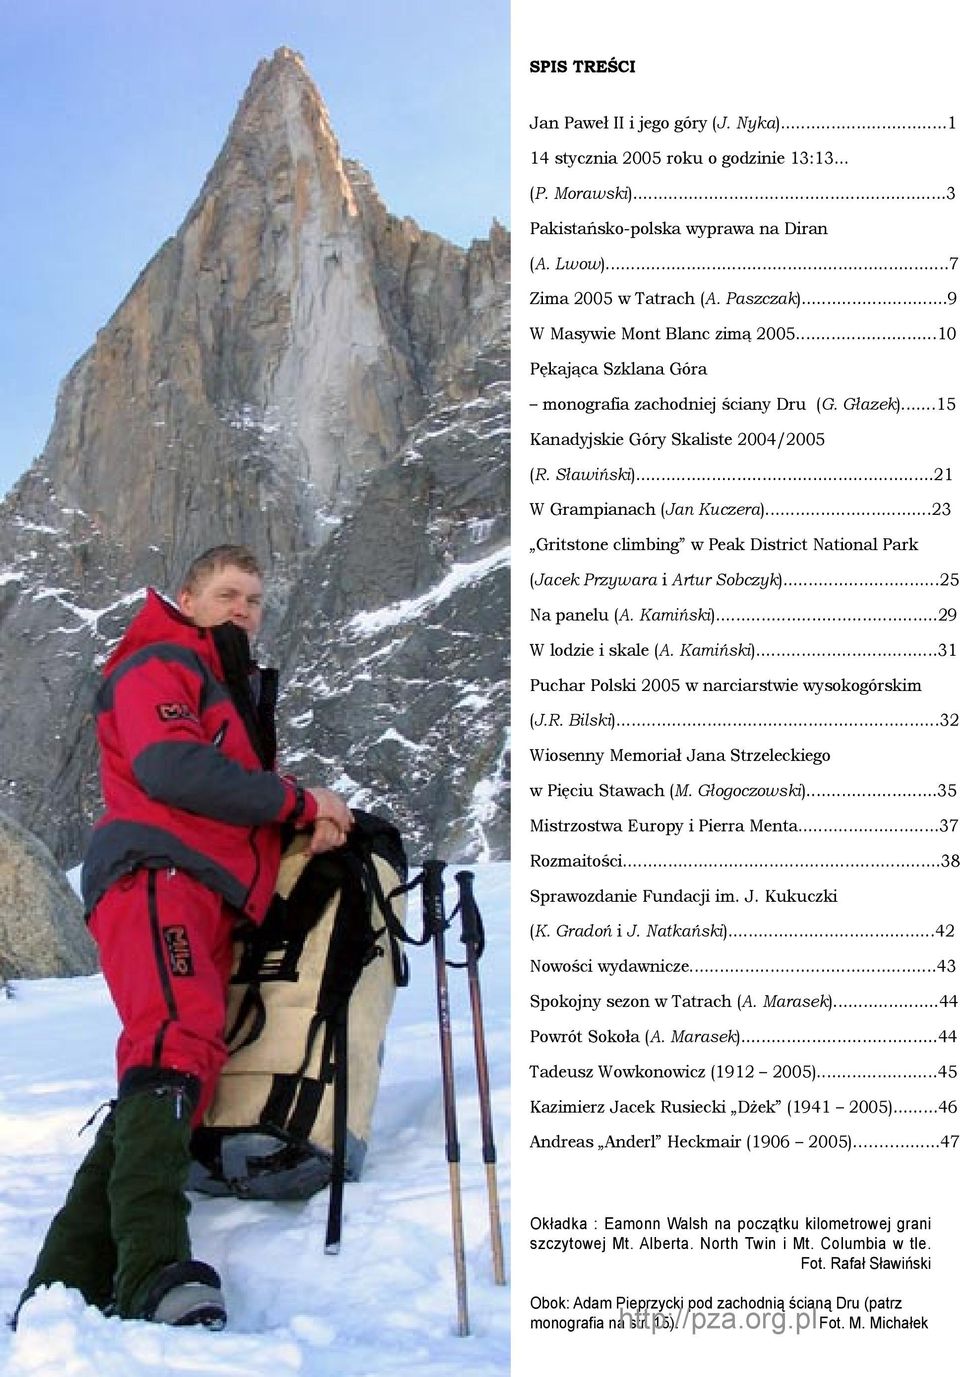 ..23 Gritstone climbing w Peak District National Park (Jacek Przywara i Artur Sobczyk)...25 Na panelu (A. Kamiński)...29 W lodzie i skale (A. Kamiński)...31 Puchar Polski 2005 w narciarstwie wysokogórskim (J.